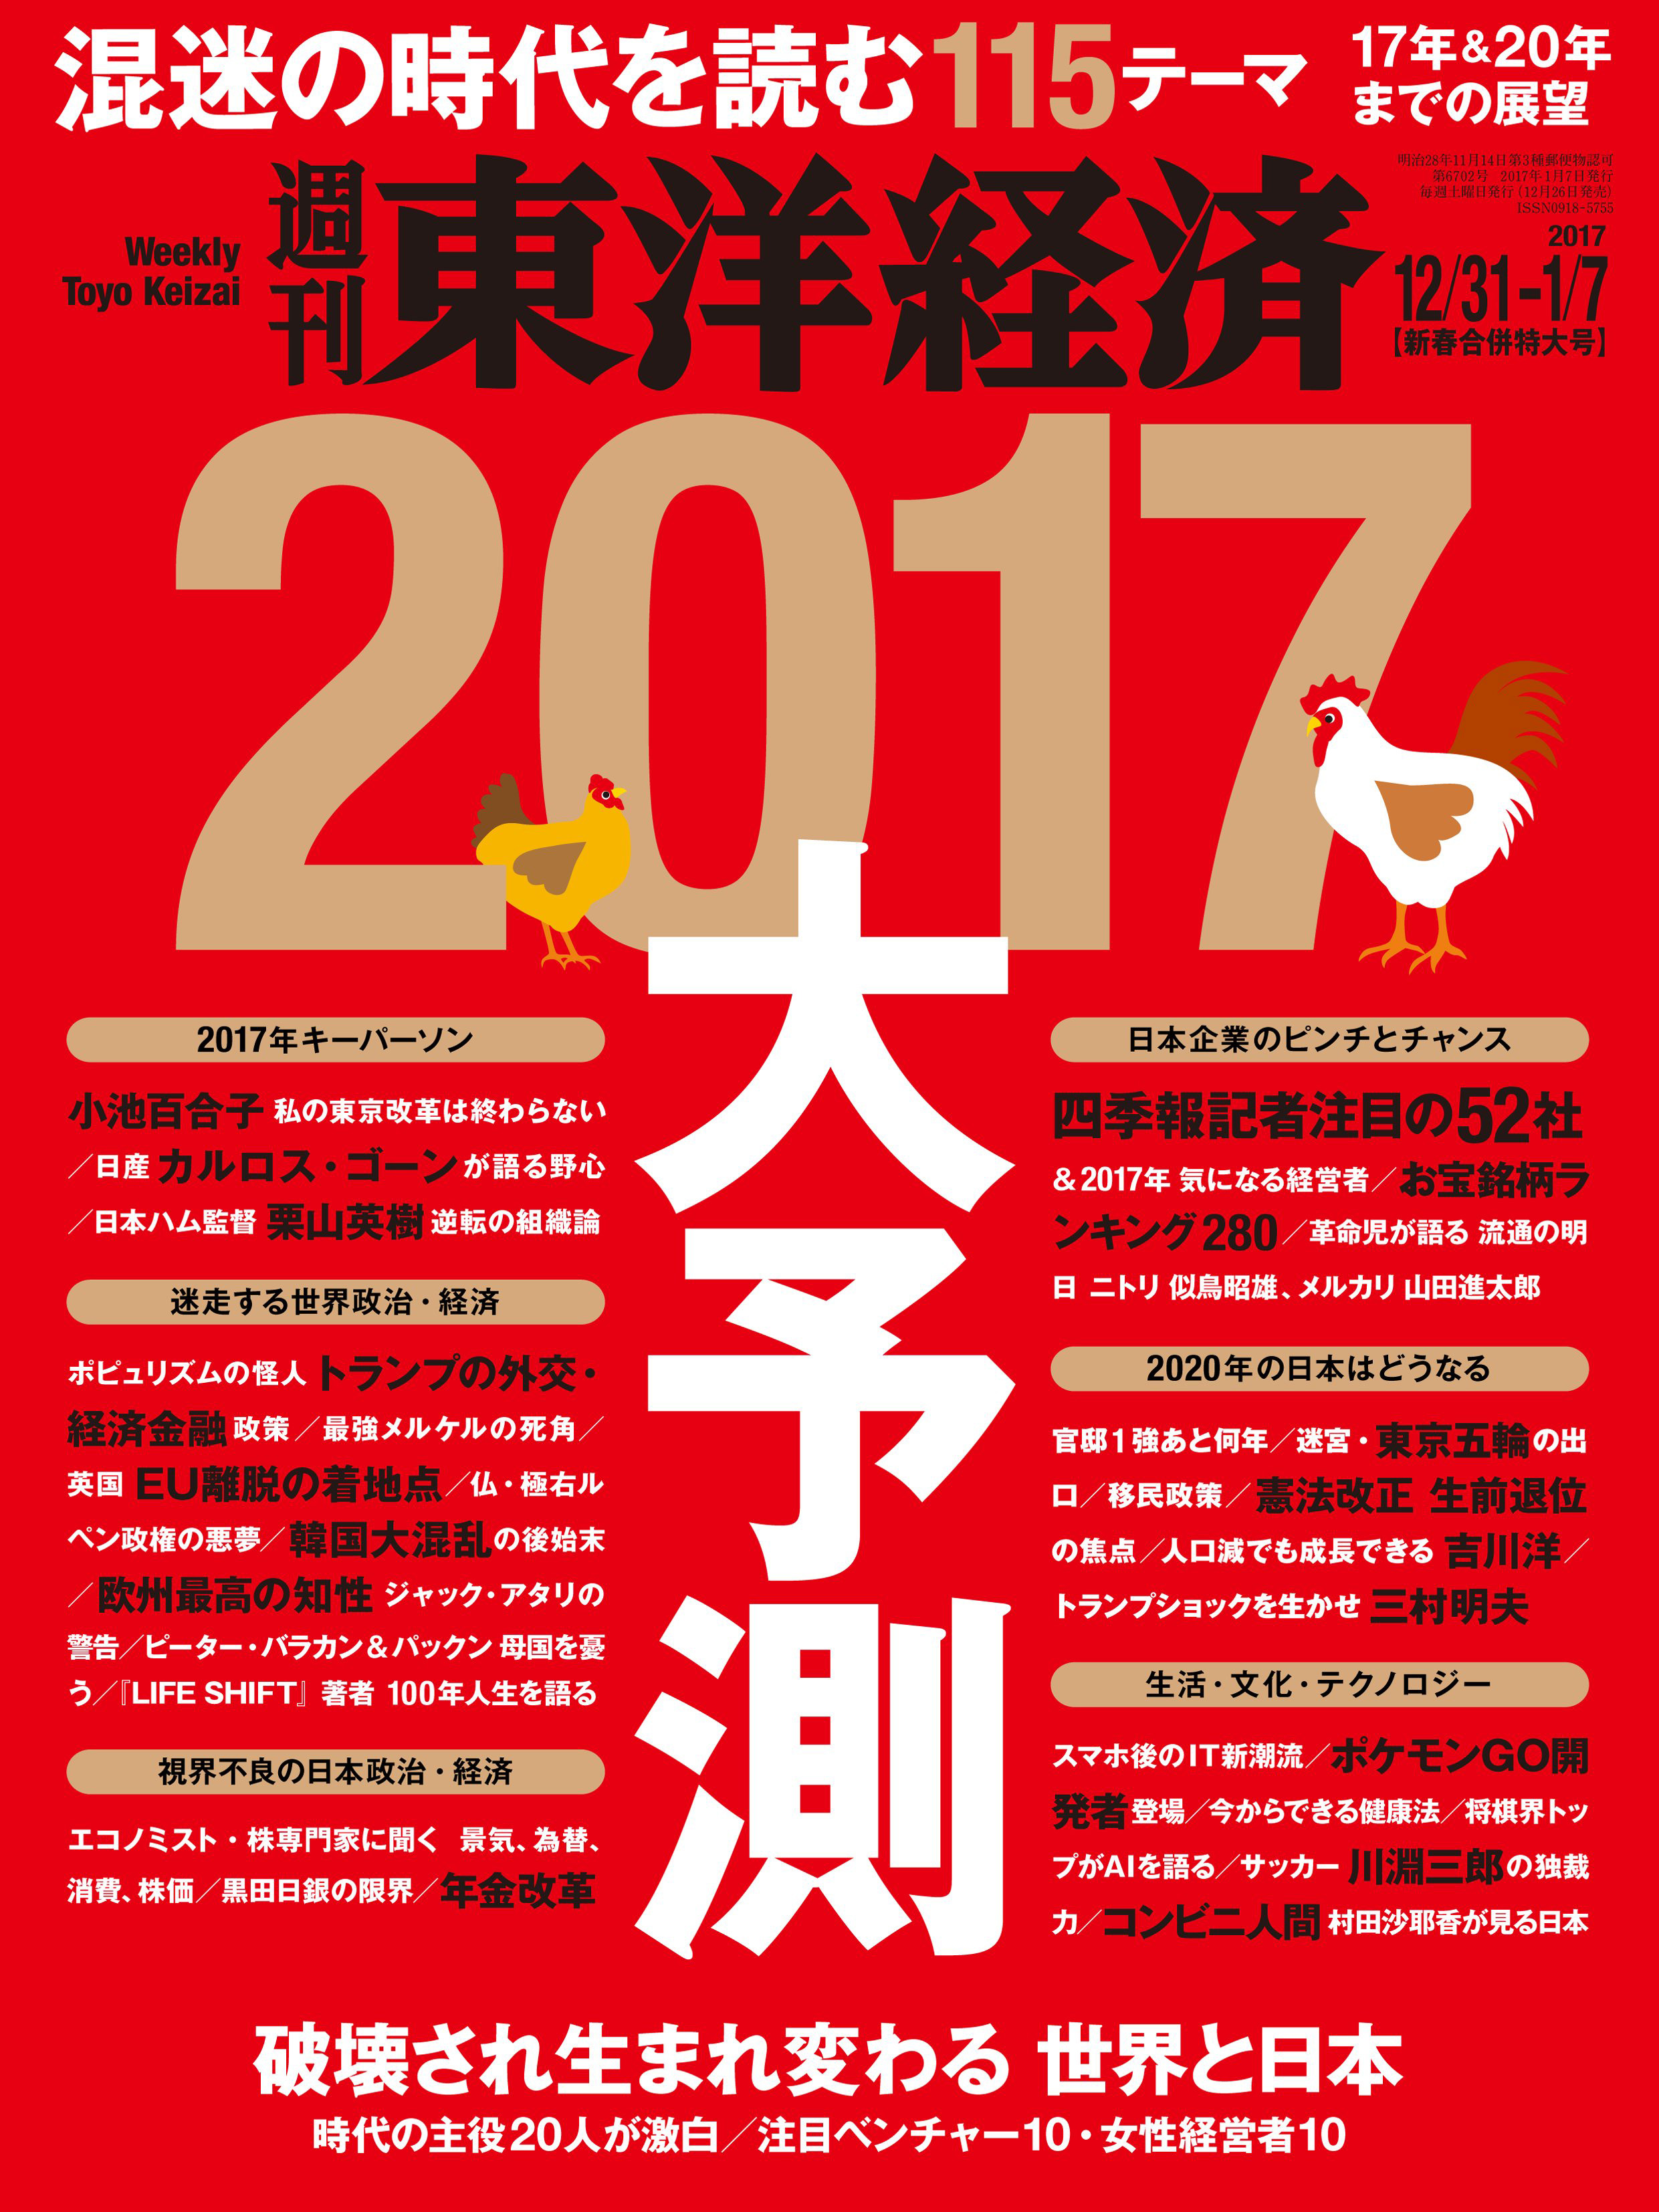 週刊東洋経済 2016/12/24-2017/1/7新春合併特大号 - - 漫画・ラノベ